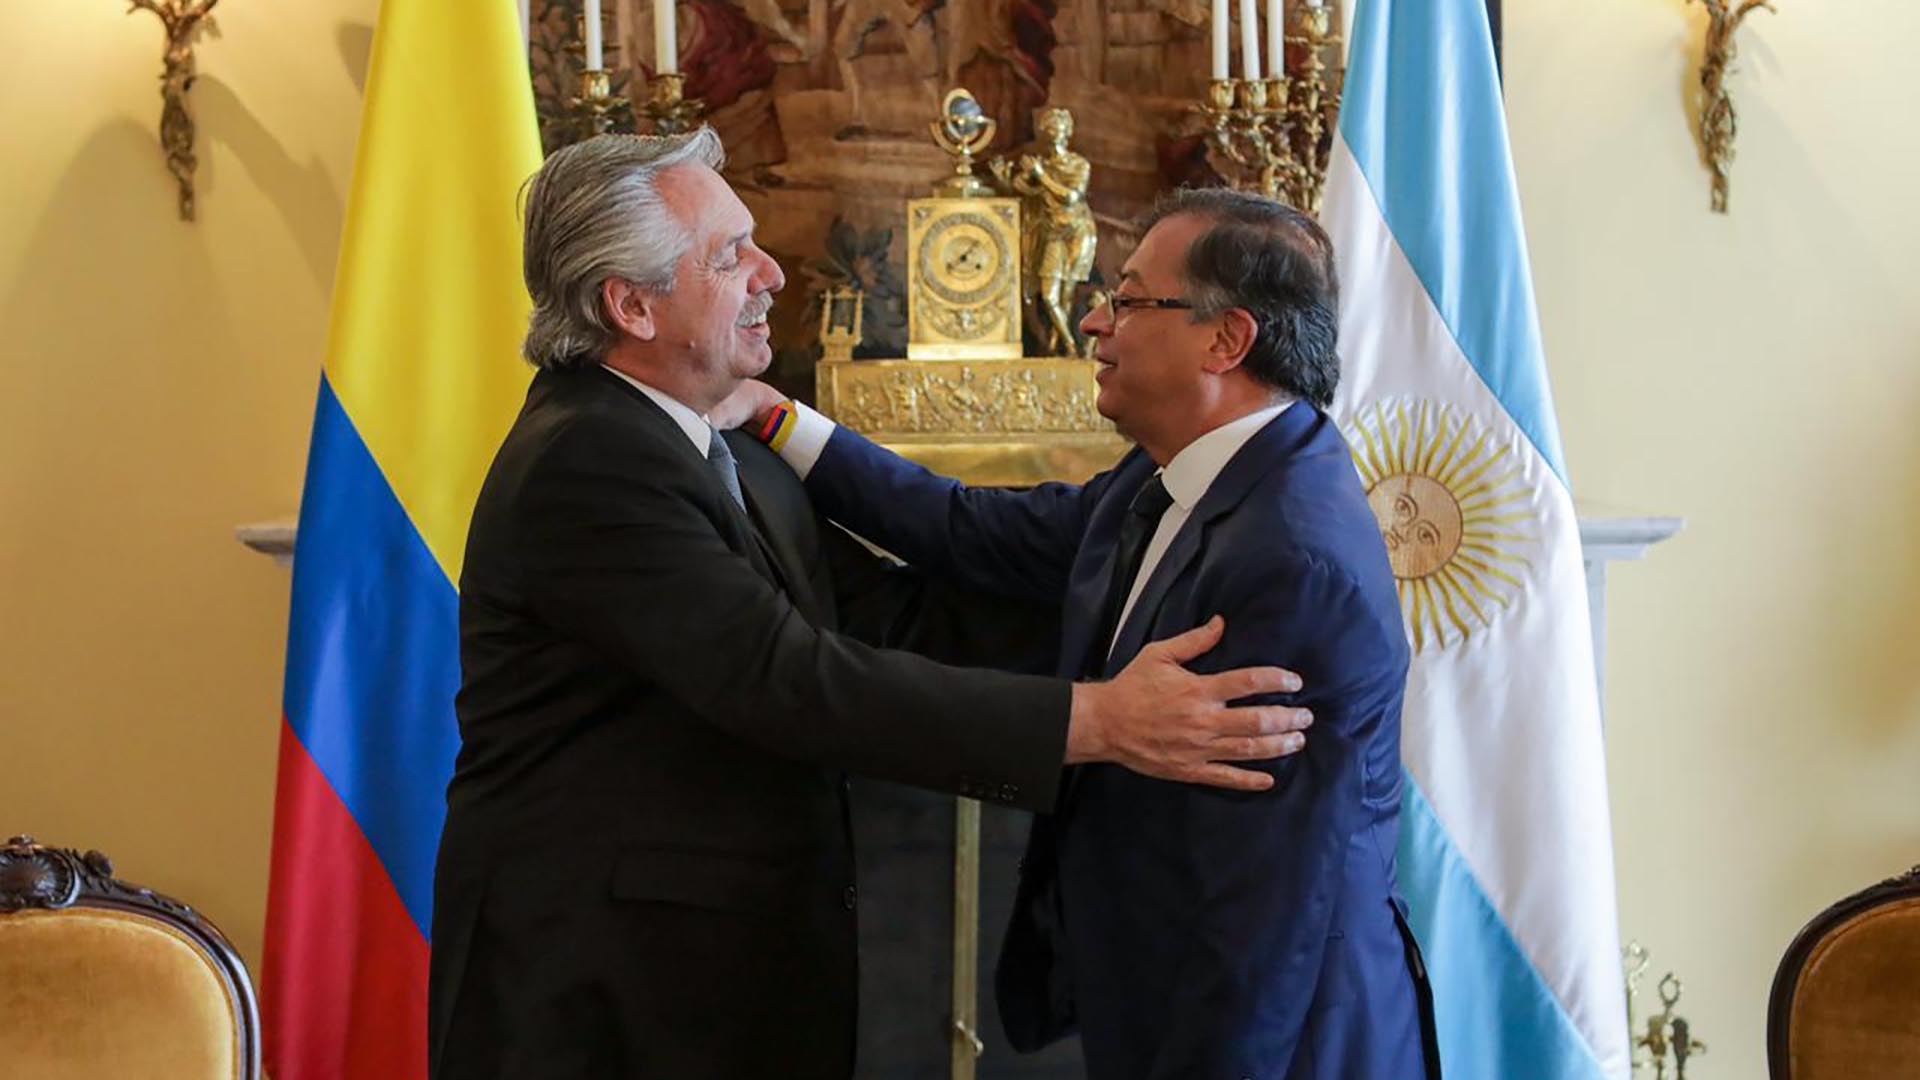 Alberto Fernández se reunió con Gustavo Petro para profundizar las relaciones bilaterales y la agenda regional